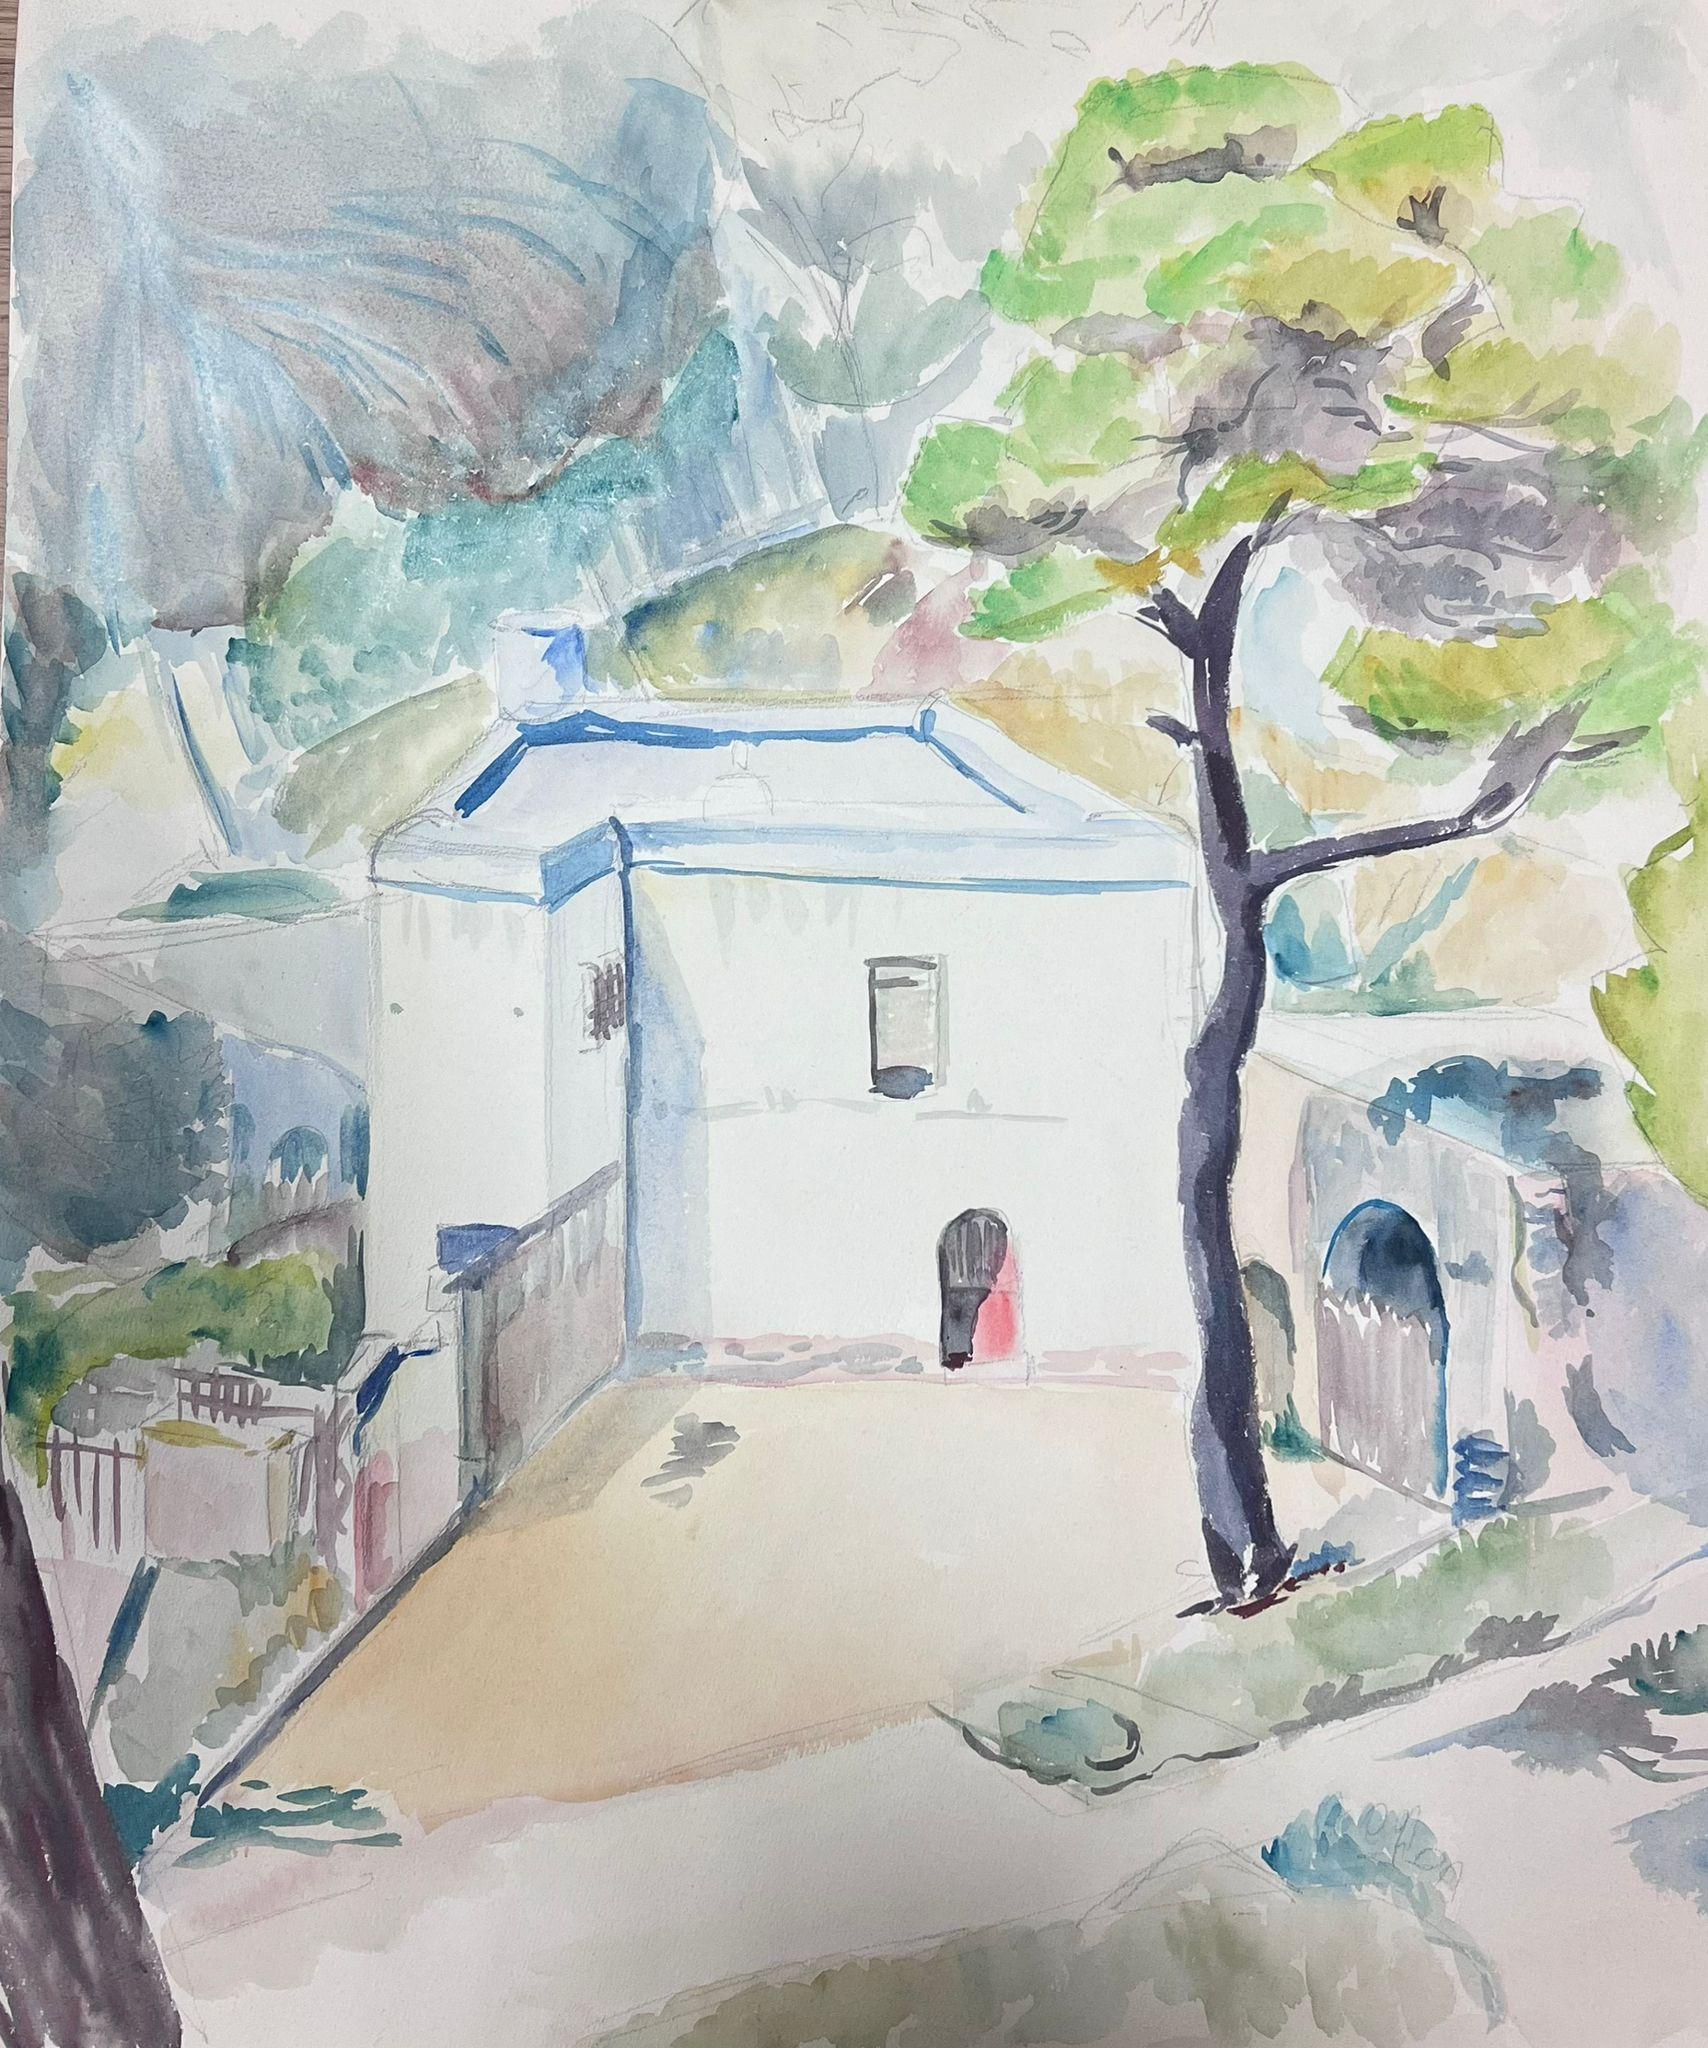 Landscape Painting Guy Nicod - Aquarelle post-impressionniste française du milieu du 20e siècle représentant un château blanc provençal